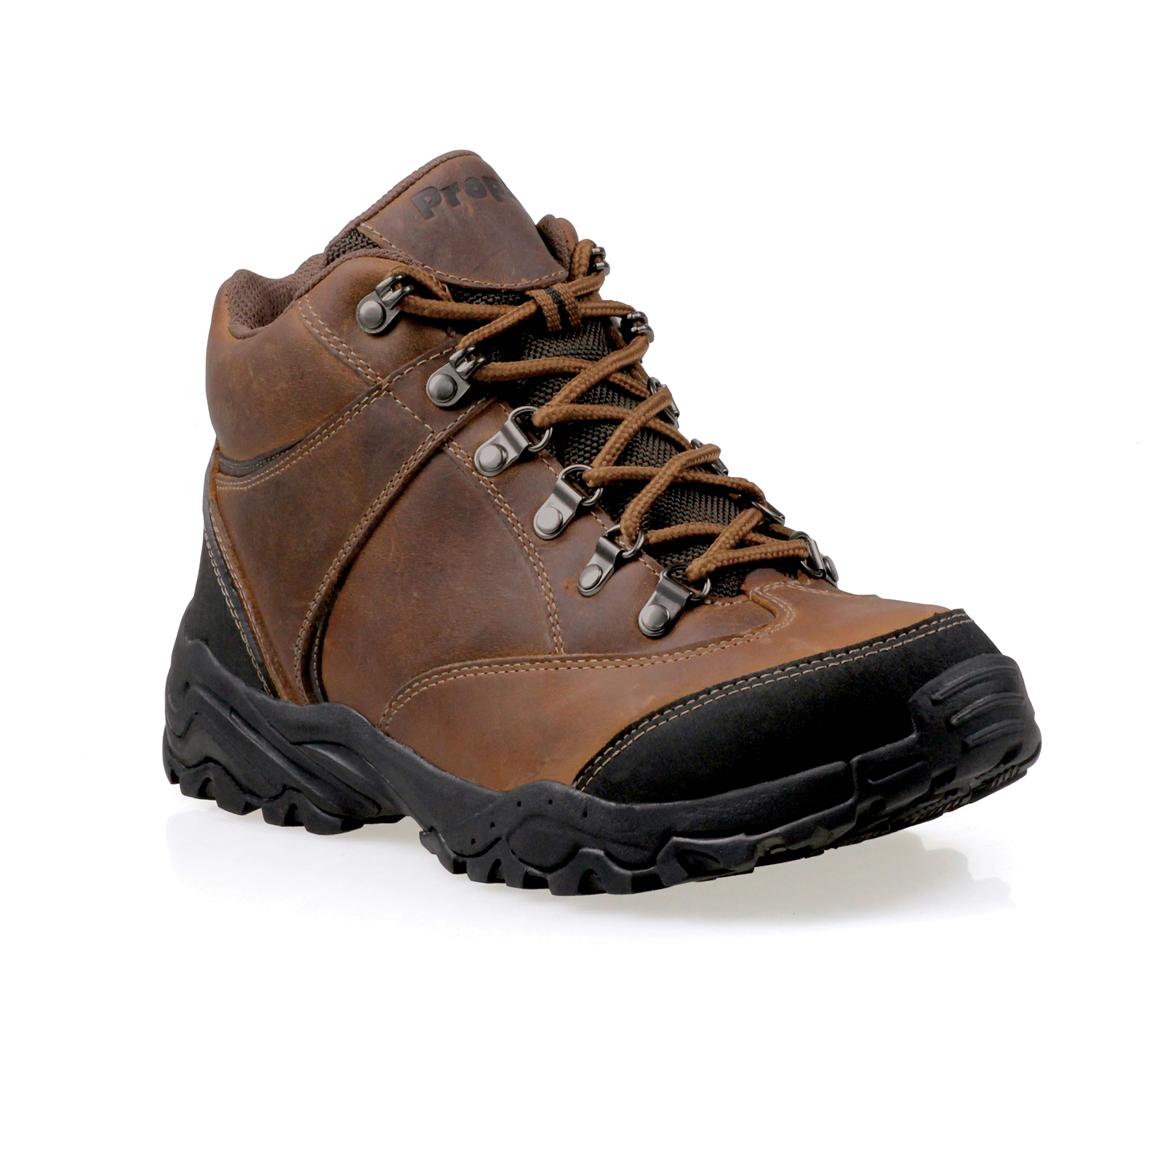 Men's Propet® 5" Navigator Waterproof Hiking Boots, Brown - 428054